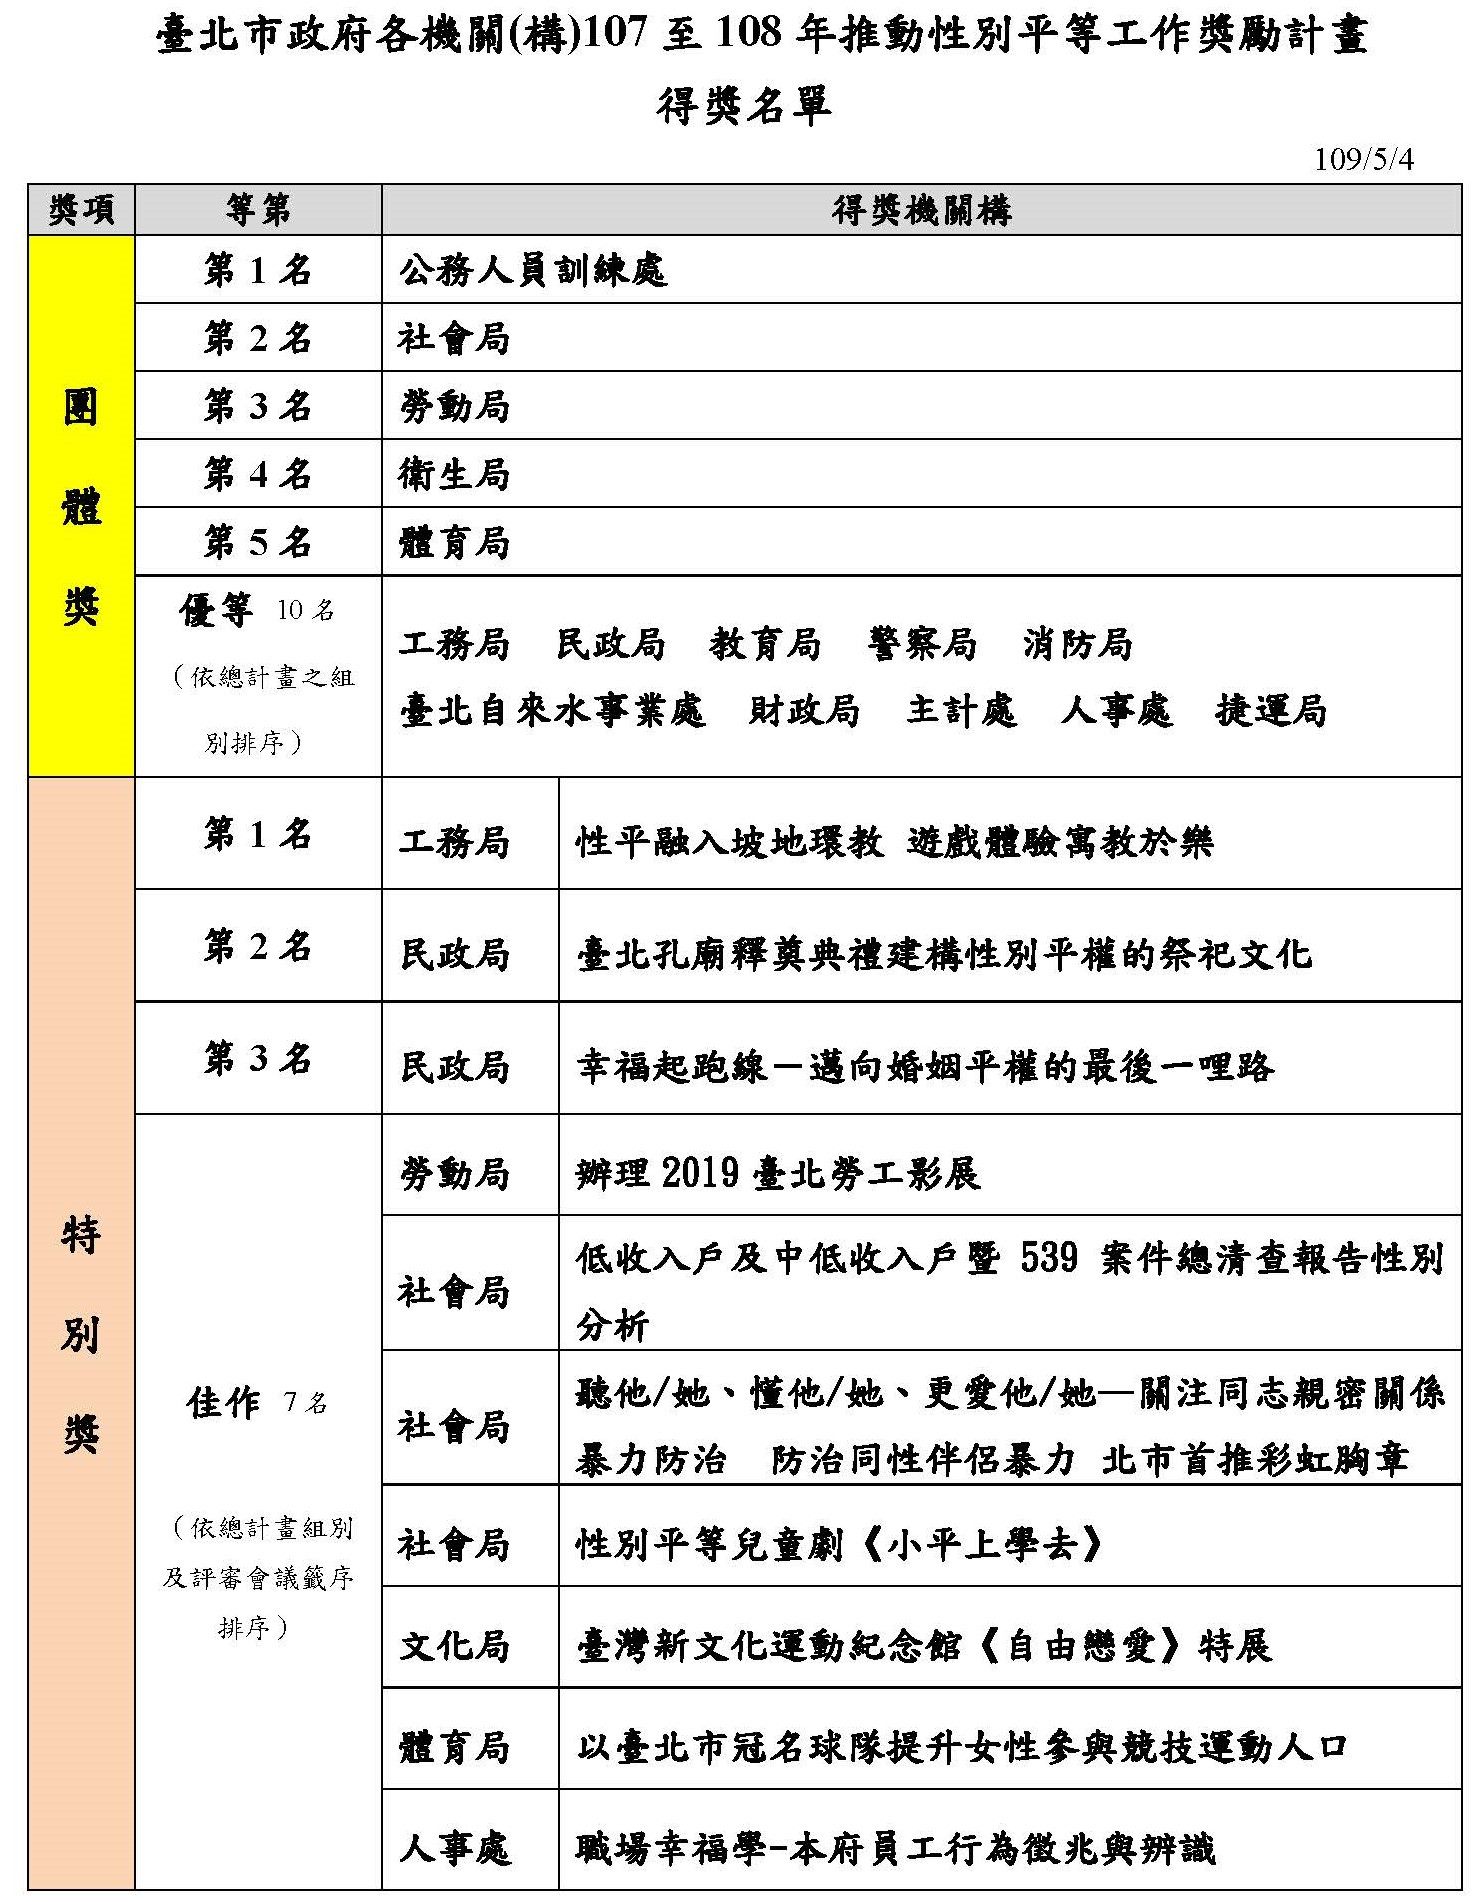 臺北市政府107年至108年推動性平獎勵計畫得獎名單，共有團體獎及特別獎2項類別。